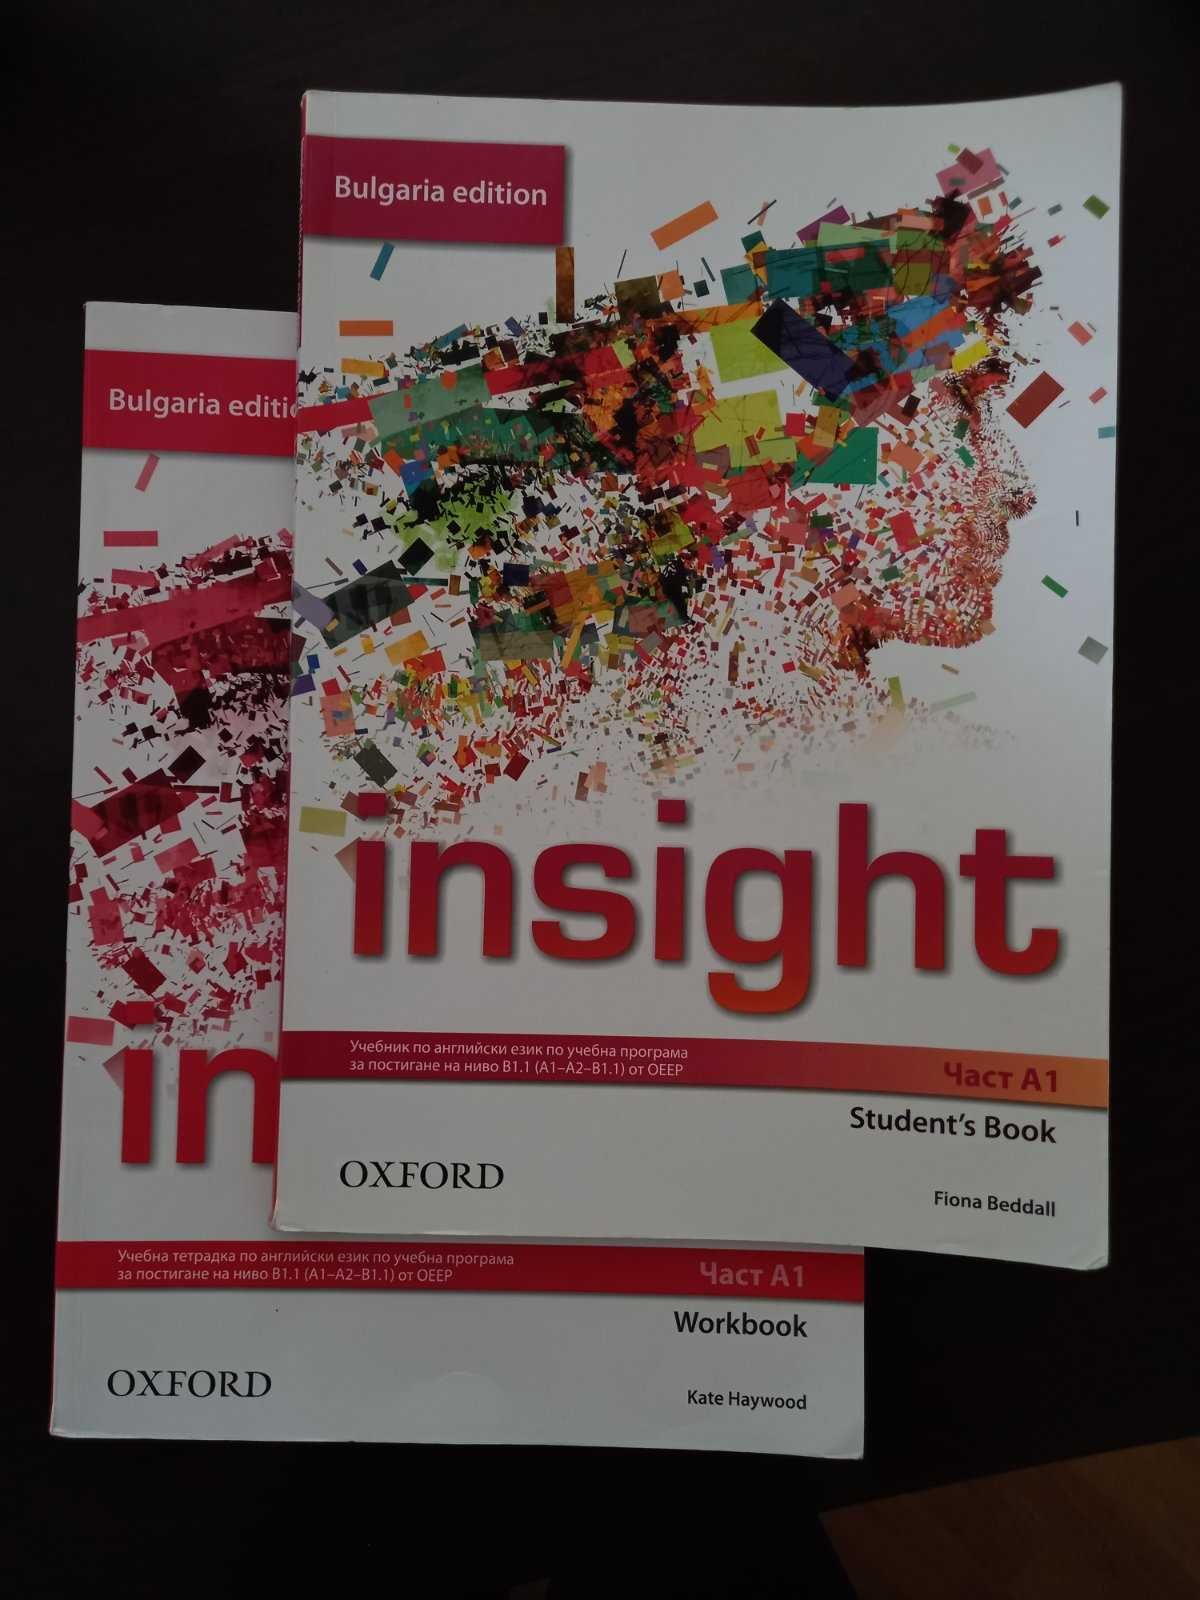 Учебници по английски език " Insight Oxford"